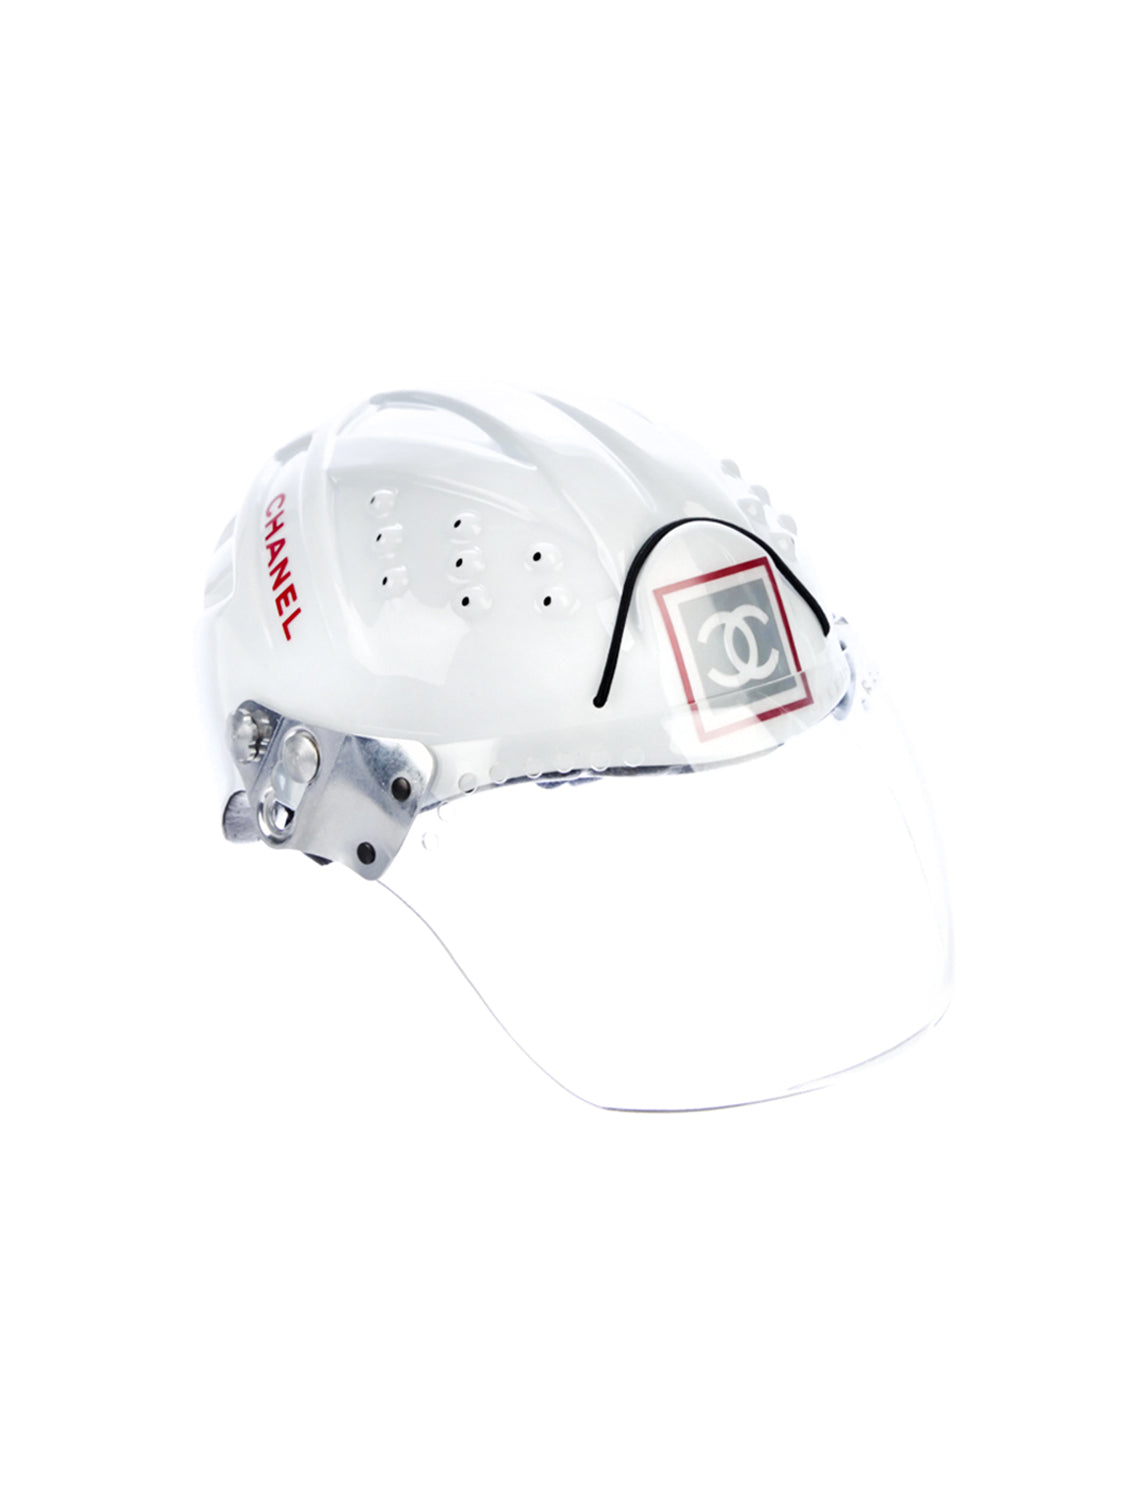 Chanel Sports Rare 1990s White Helmet